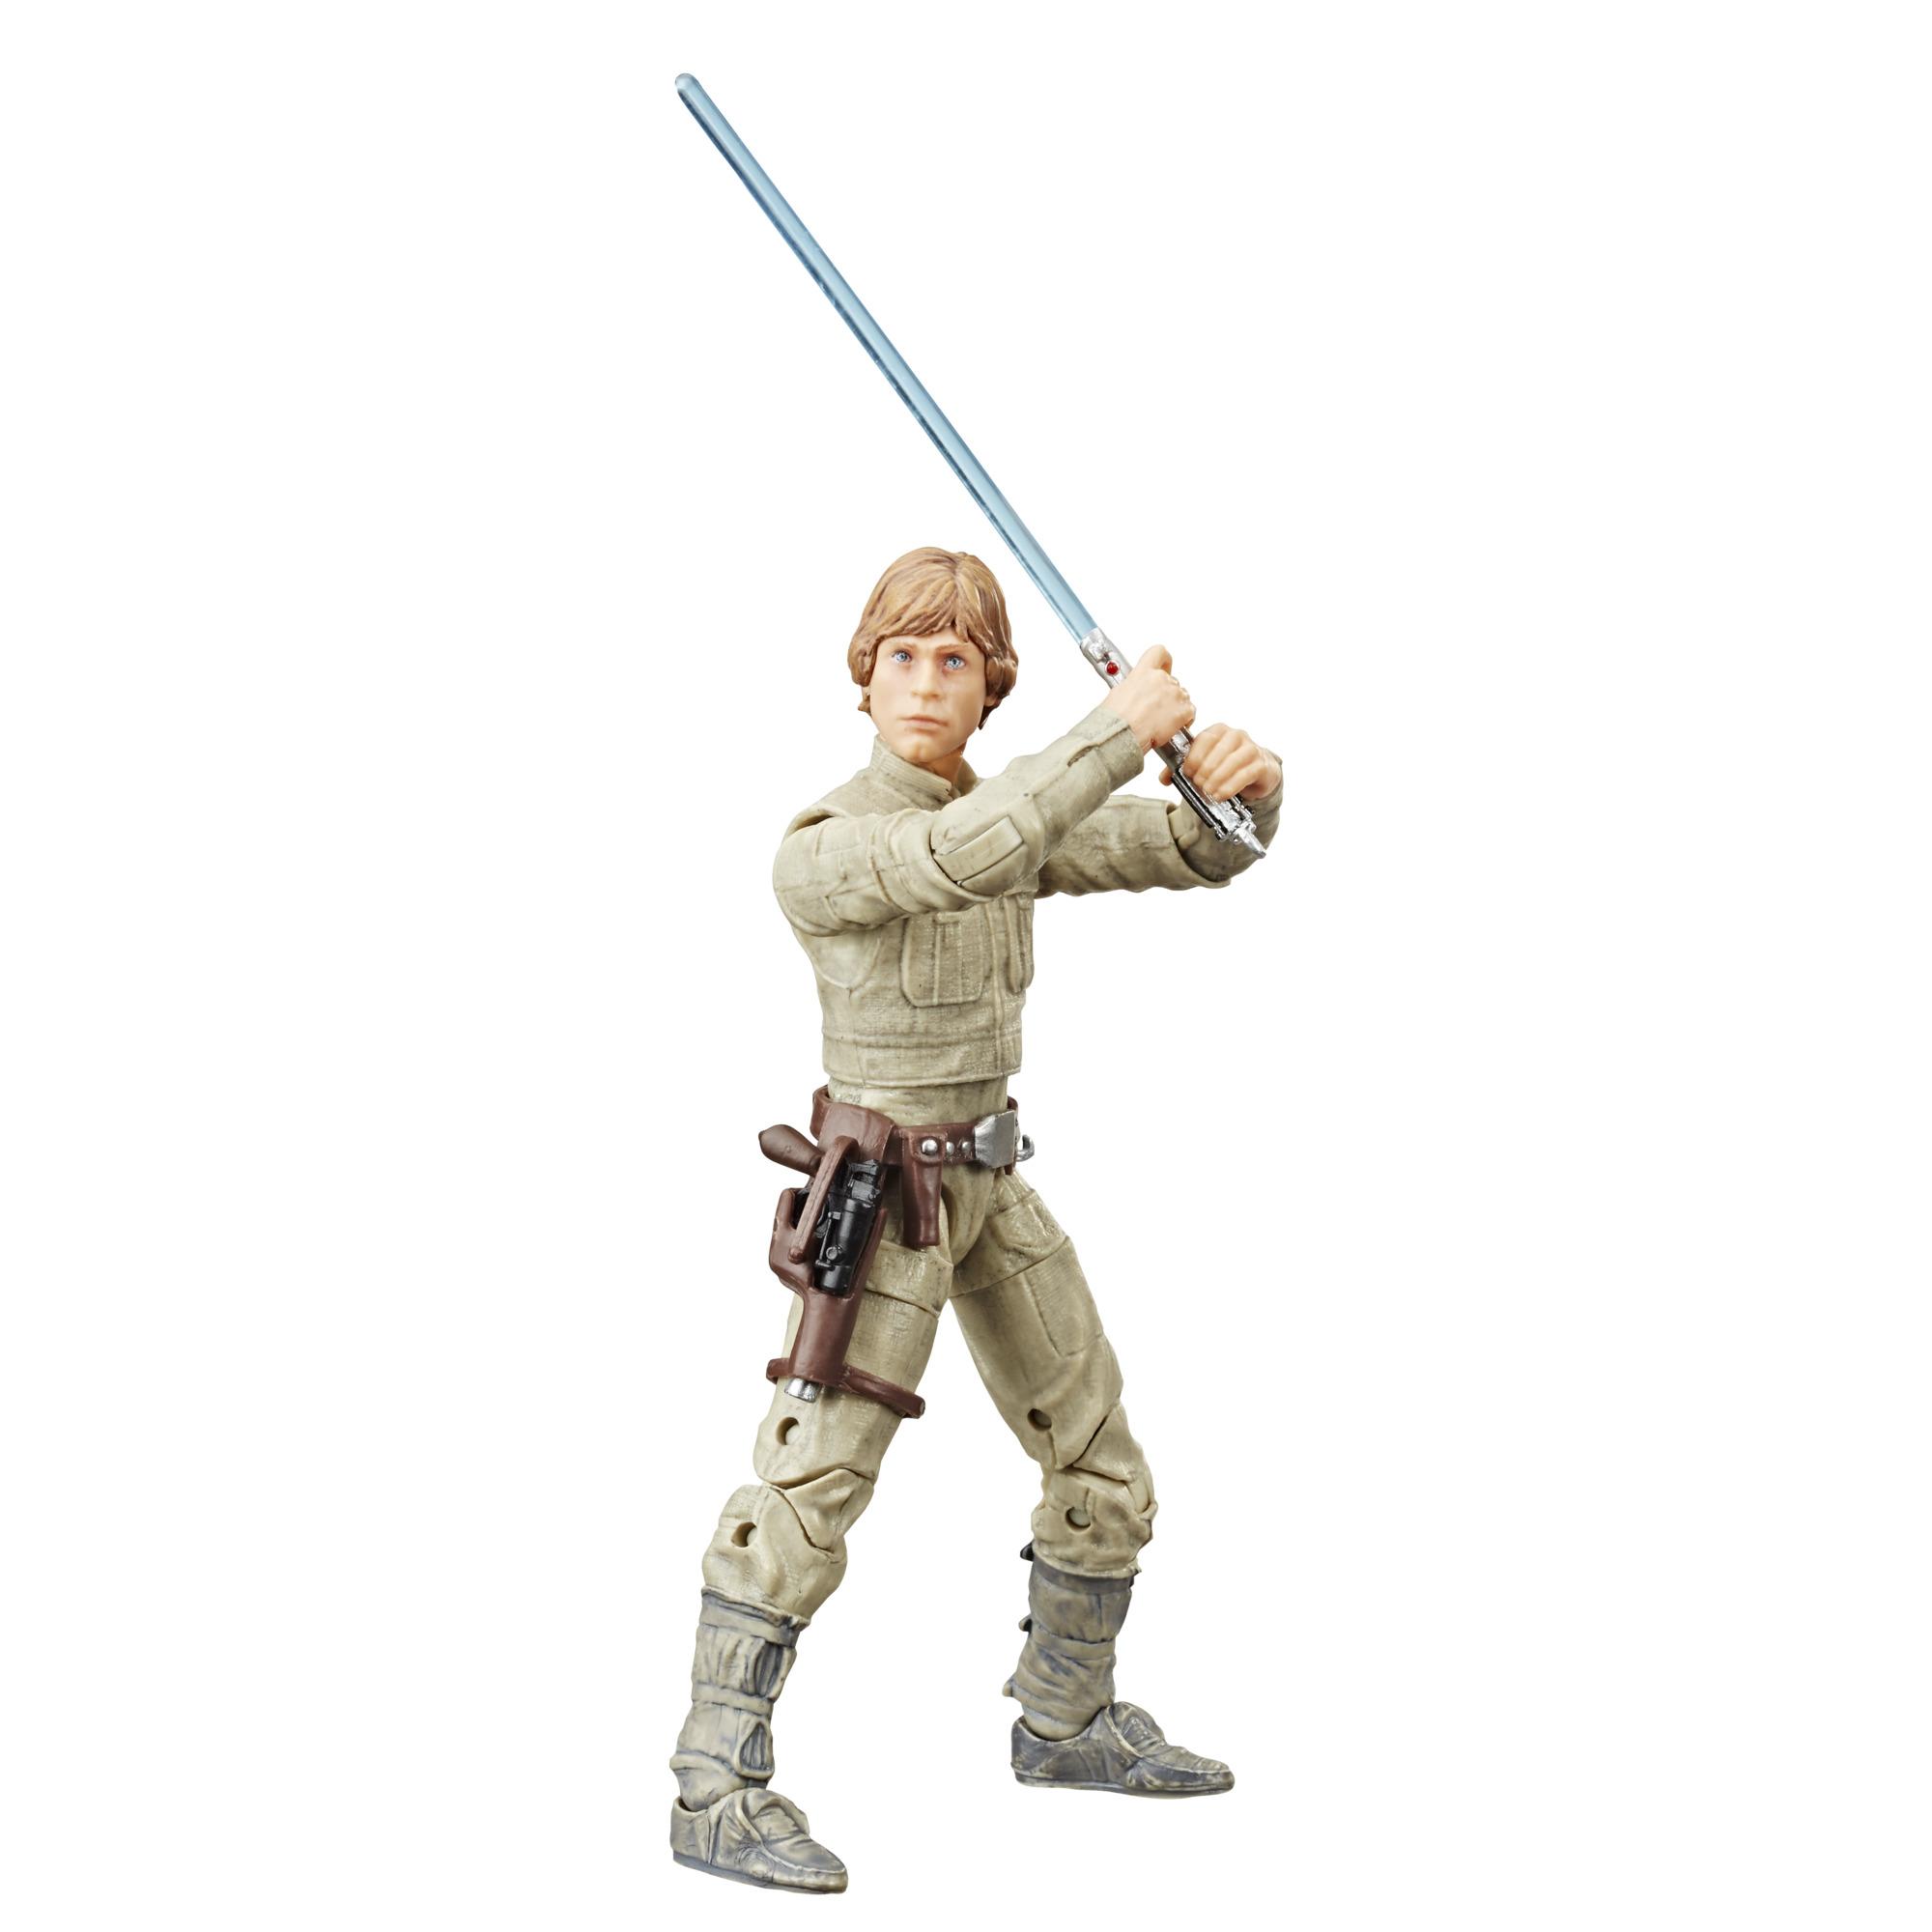 Playskool Star Wars Galactic Heroes Bespin Luke Skywalker Empire Strikes Back 